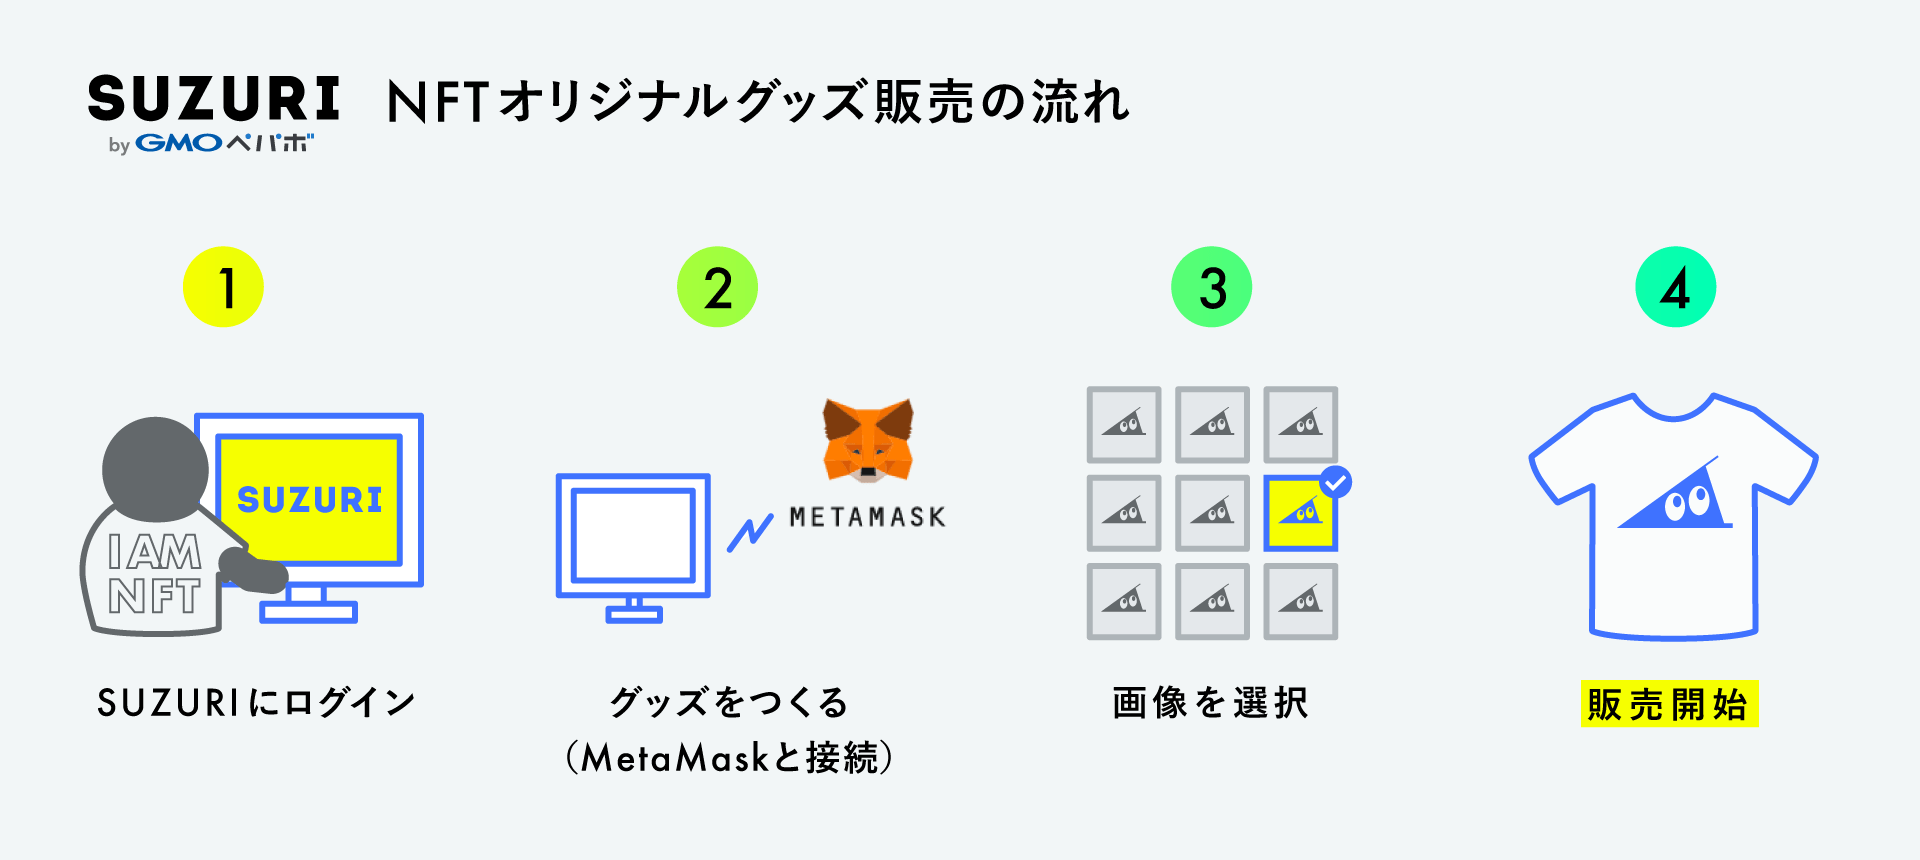 NFTオリジナルグッズ販売の流れを示した図。（1）SUZURIにログイン。（2）グッズをつくる（MetaMaskと接続）。（3）画像を選択。（4）販売開始。